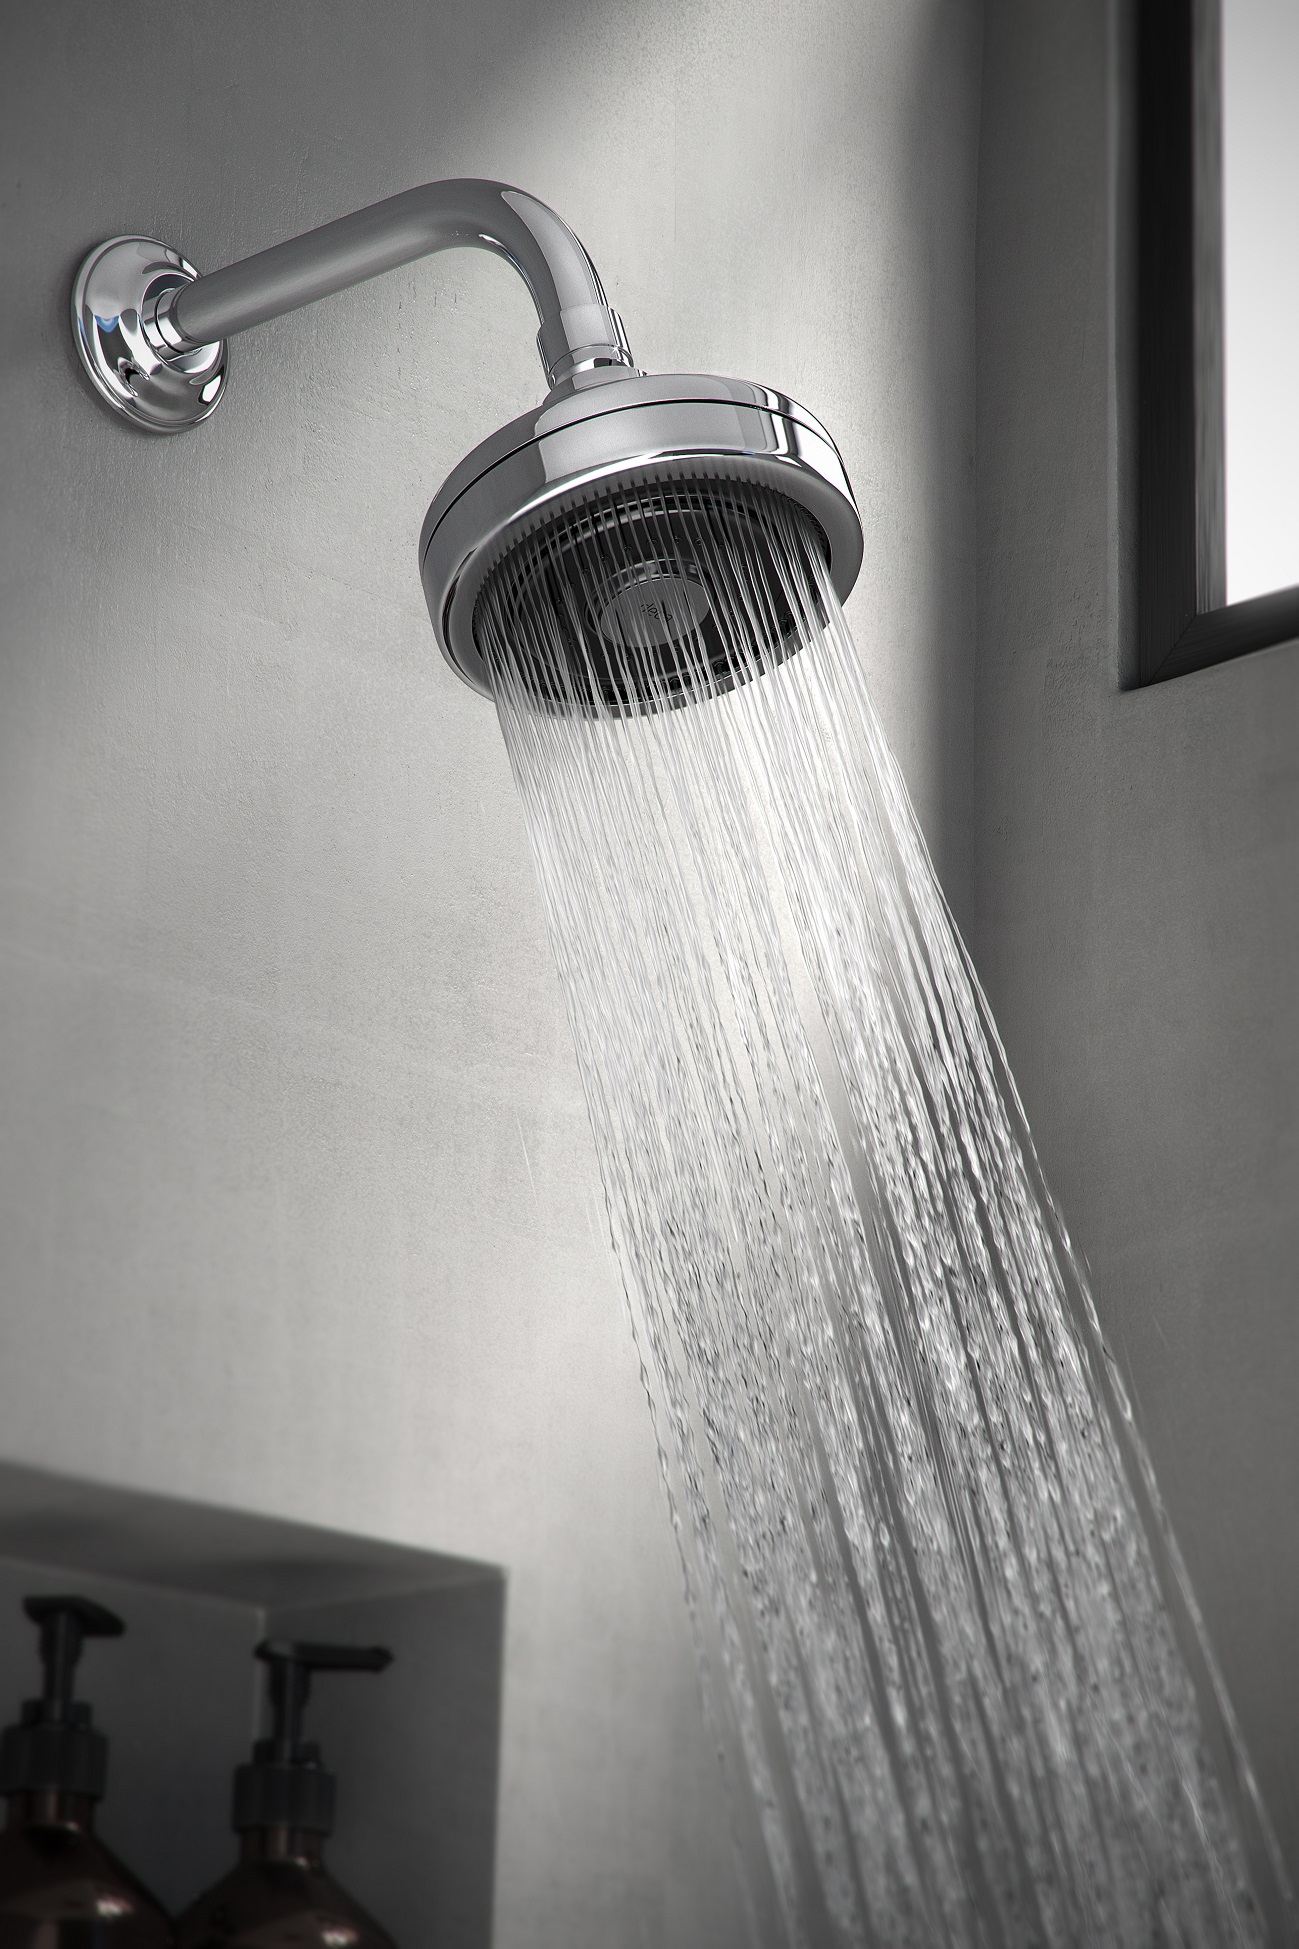 Dicas ajudam a manter duchas e chuveiros sempre limpos e com boa performance